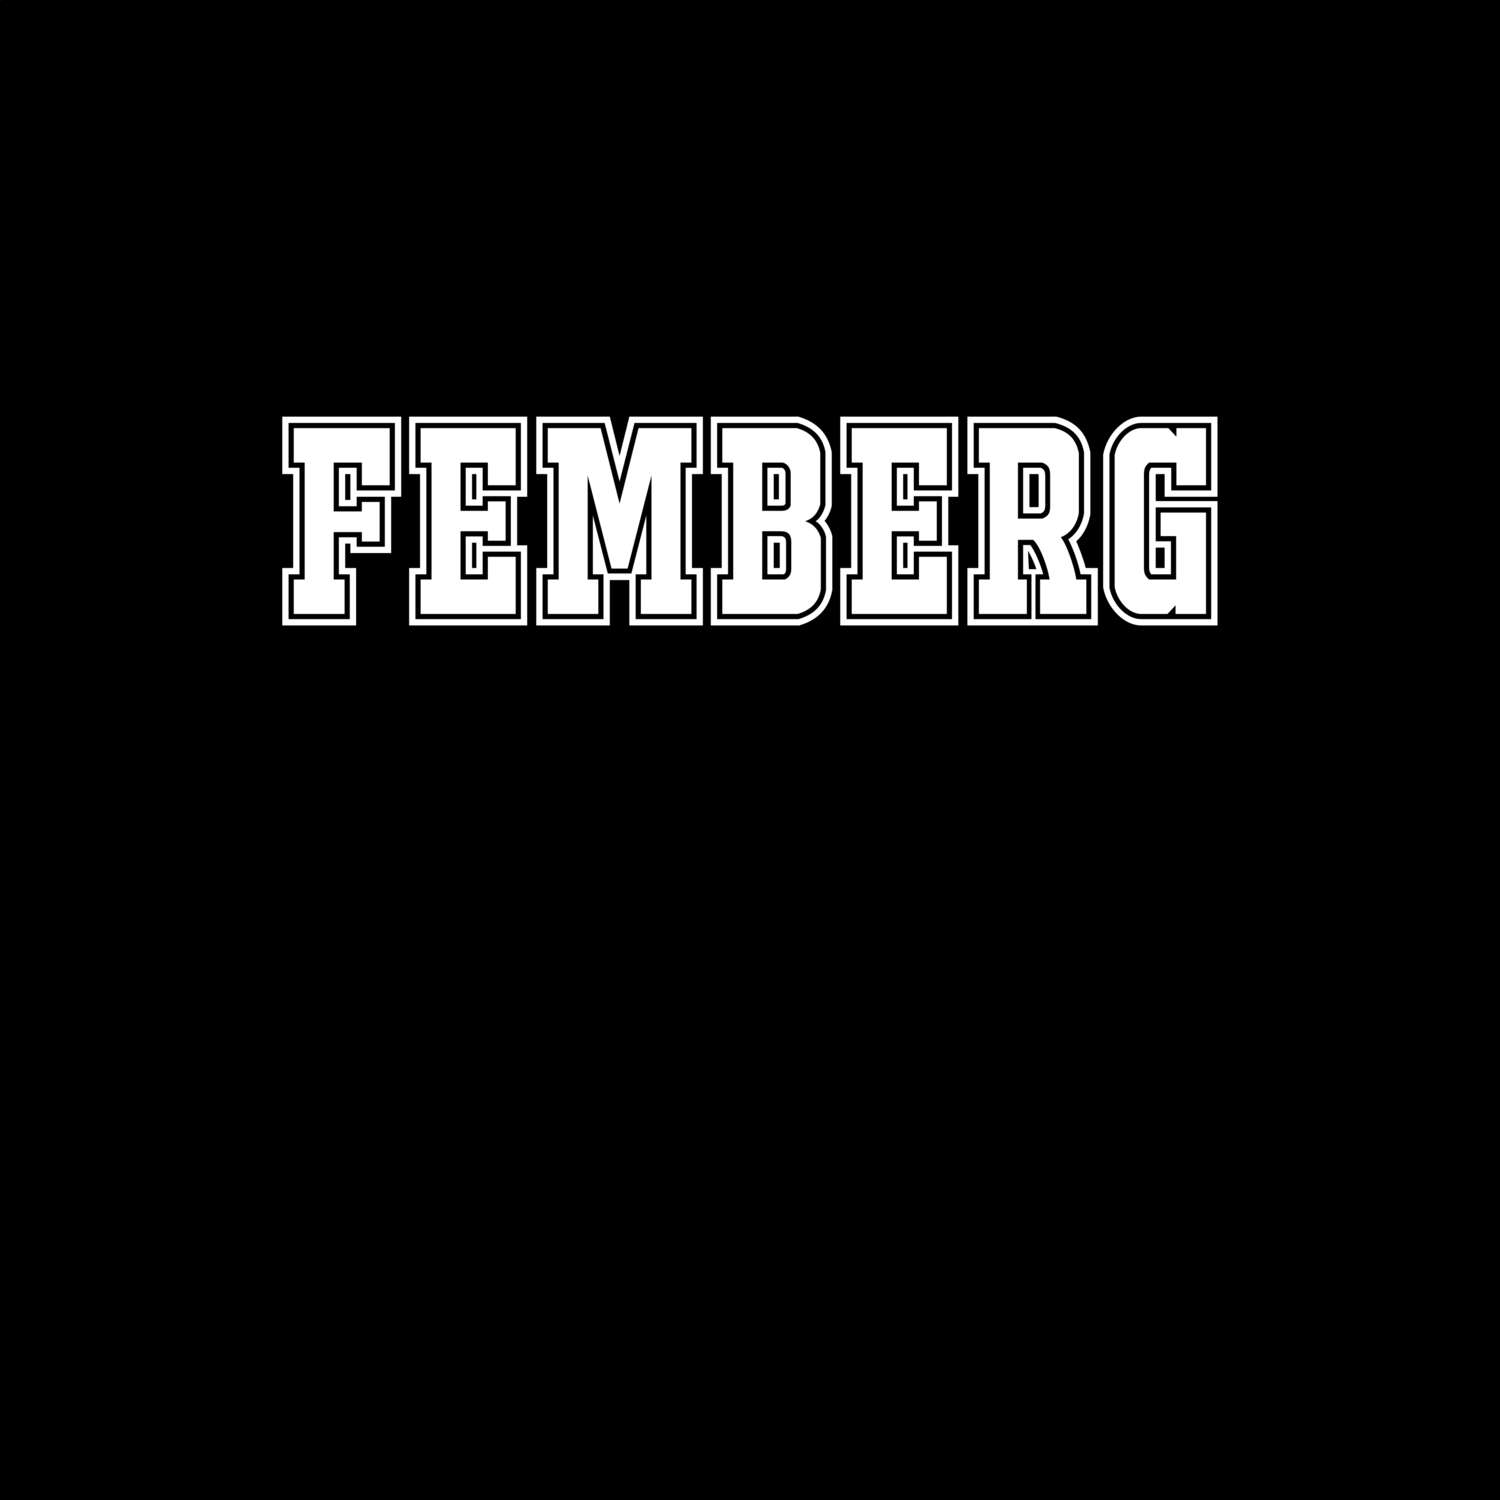 Femberg T-Shirt »Classic«